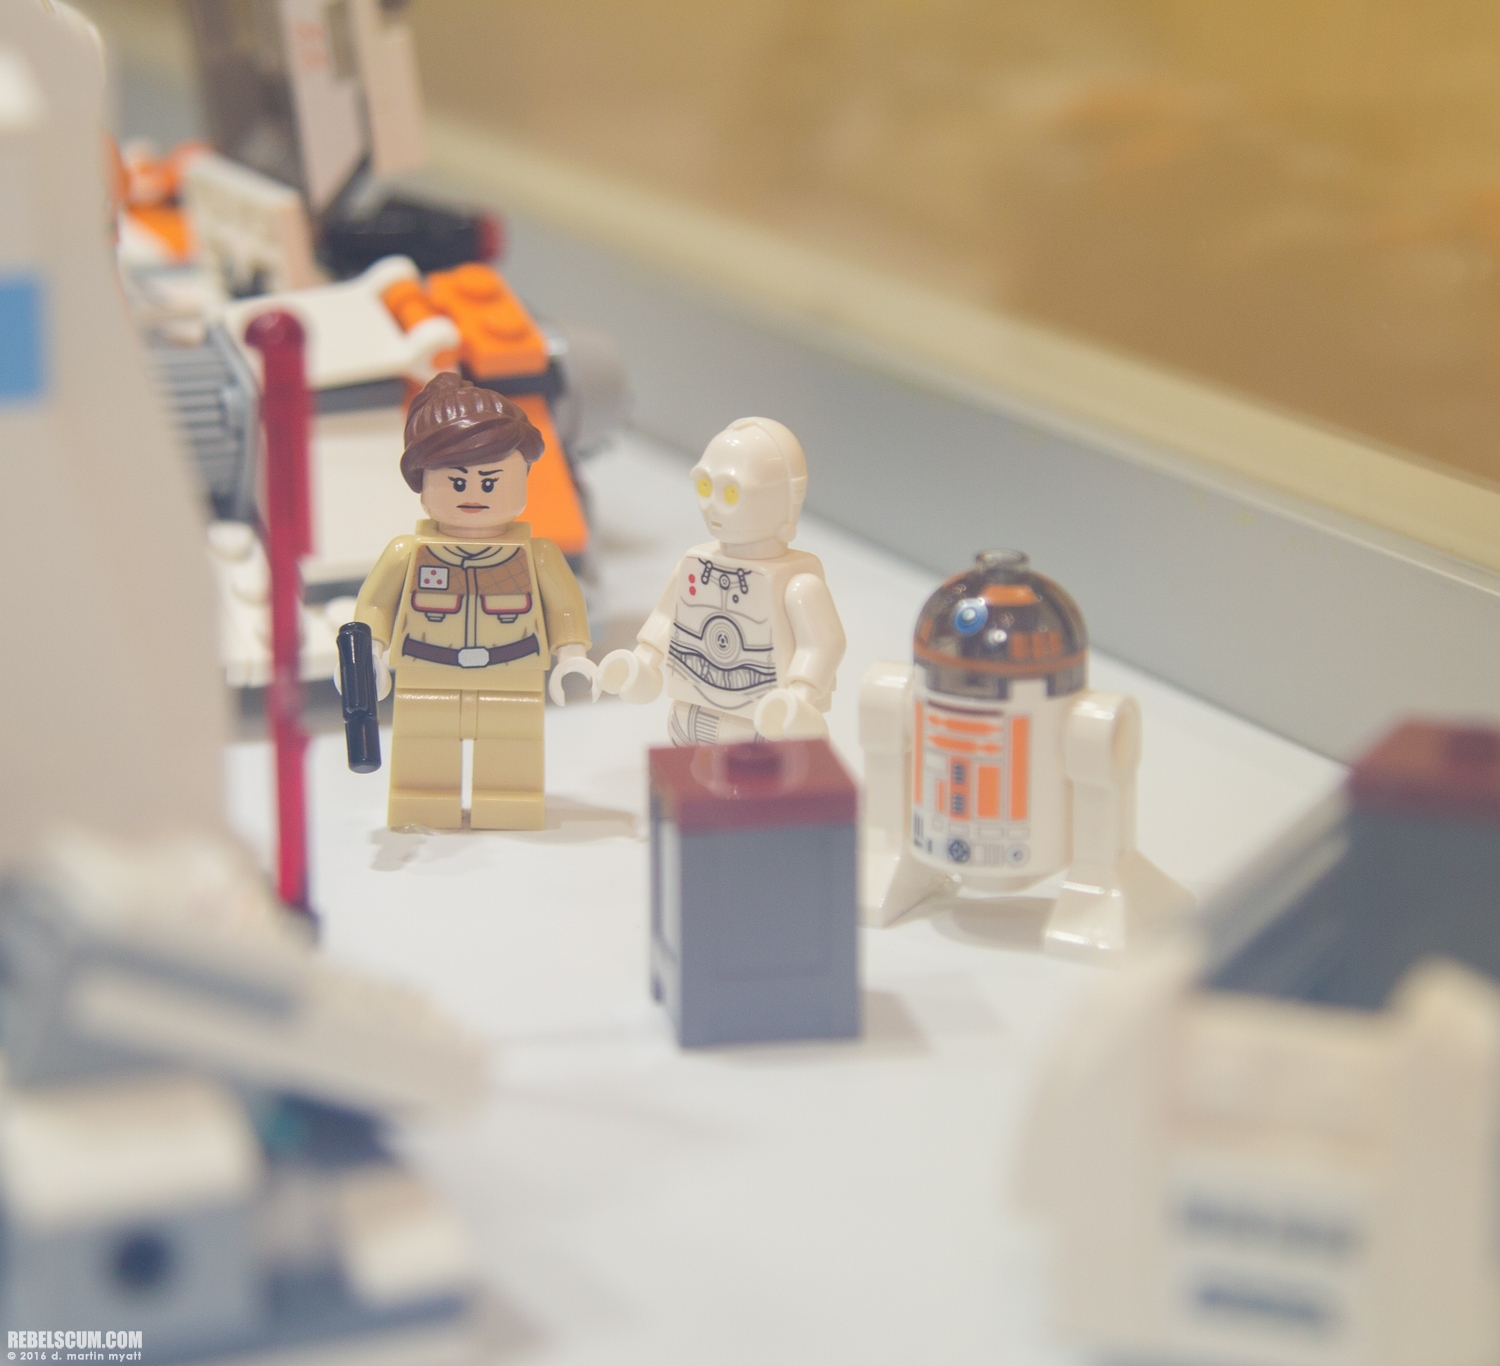 LEGO-2015-International-Toy-Fair-Star-Wars-131.jpg